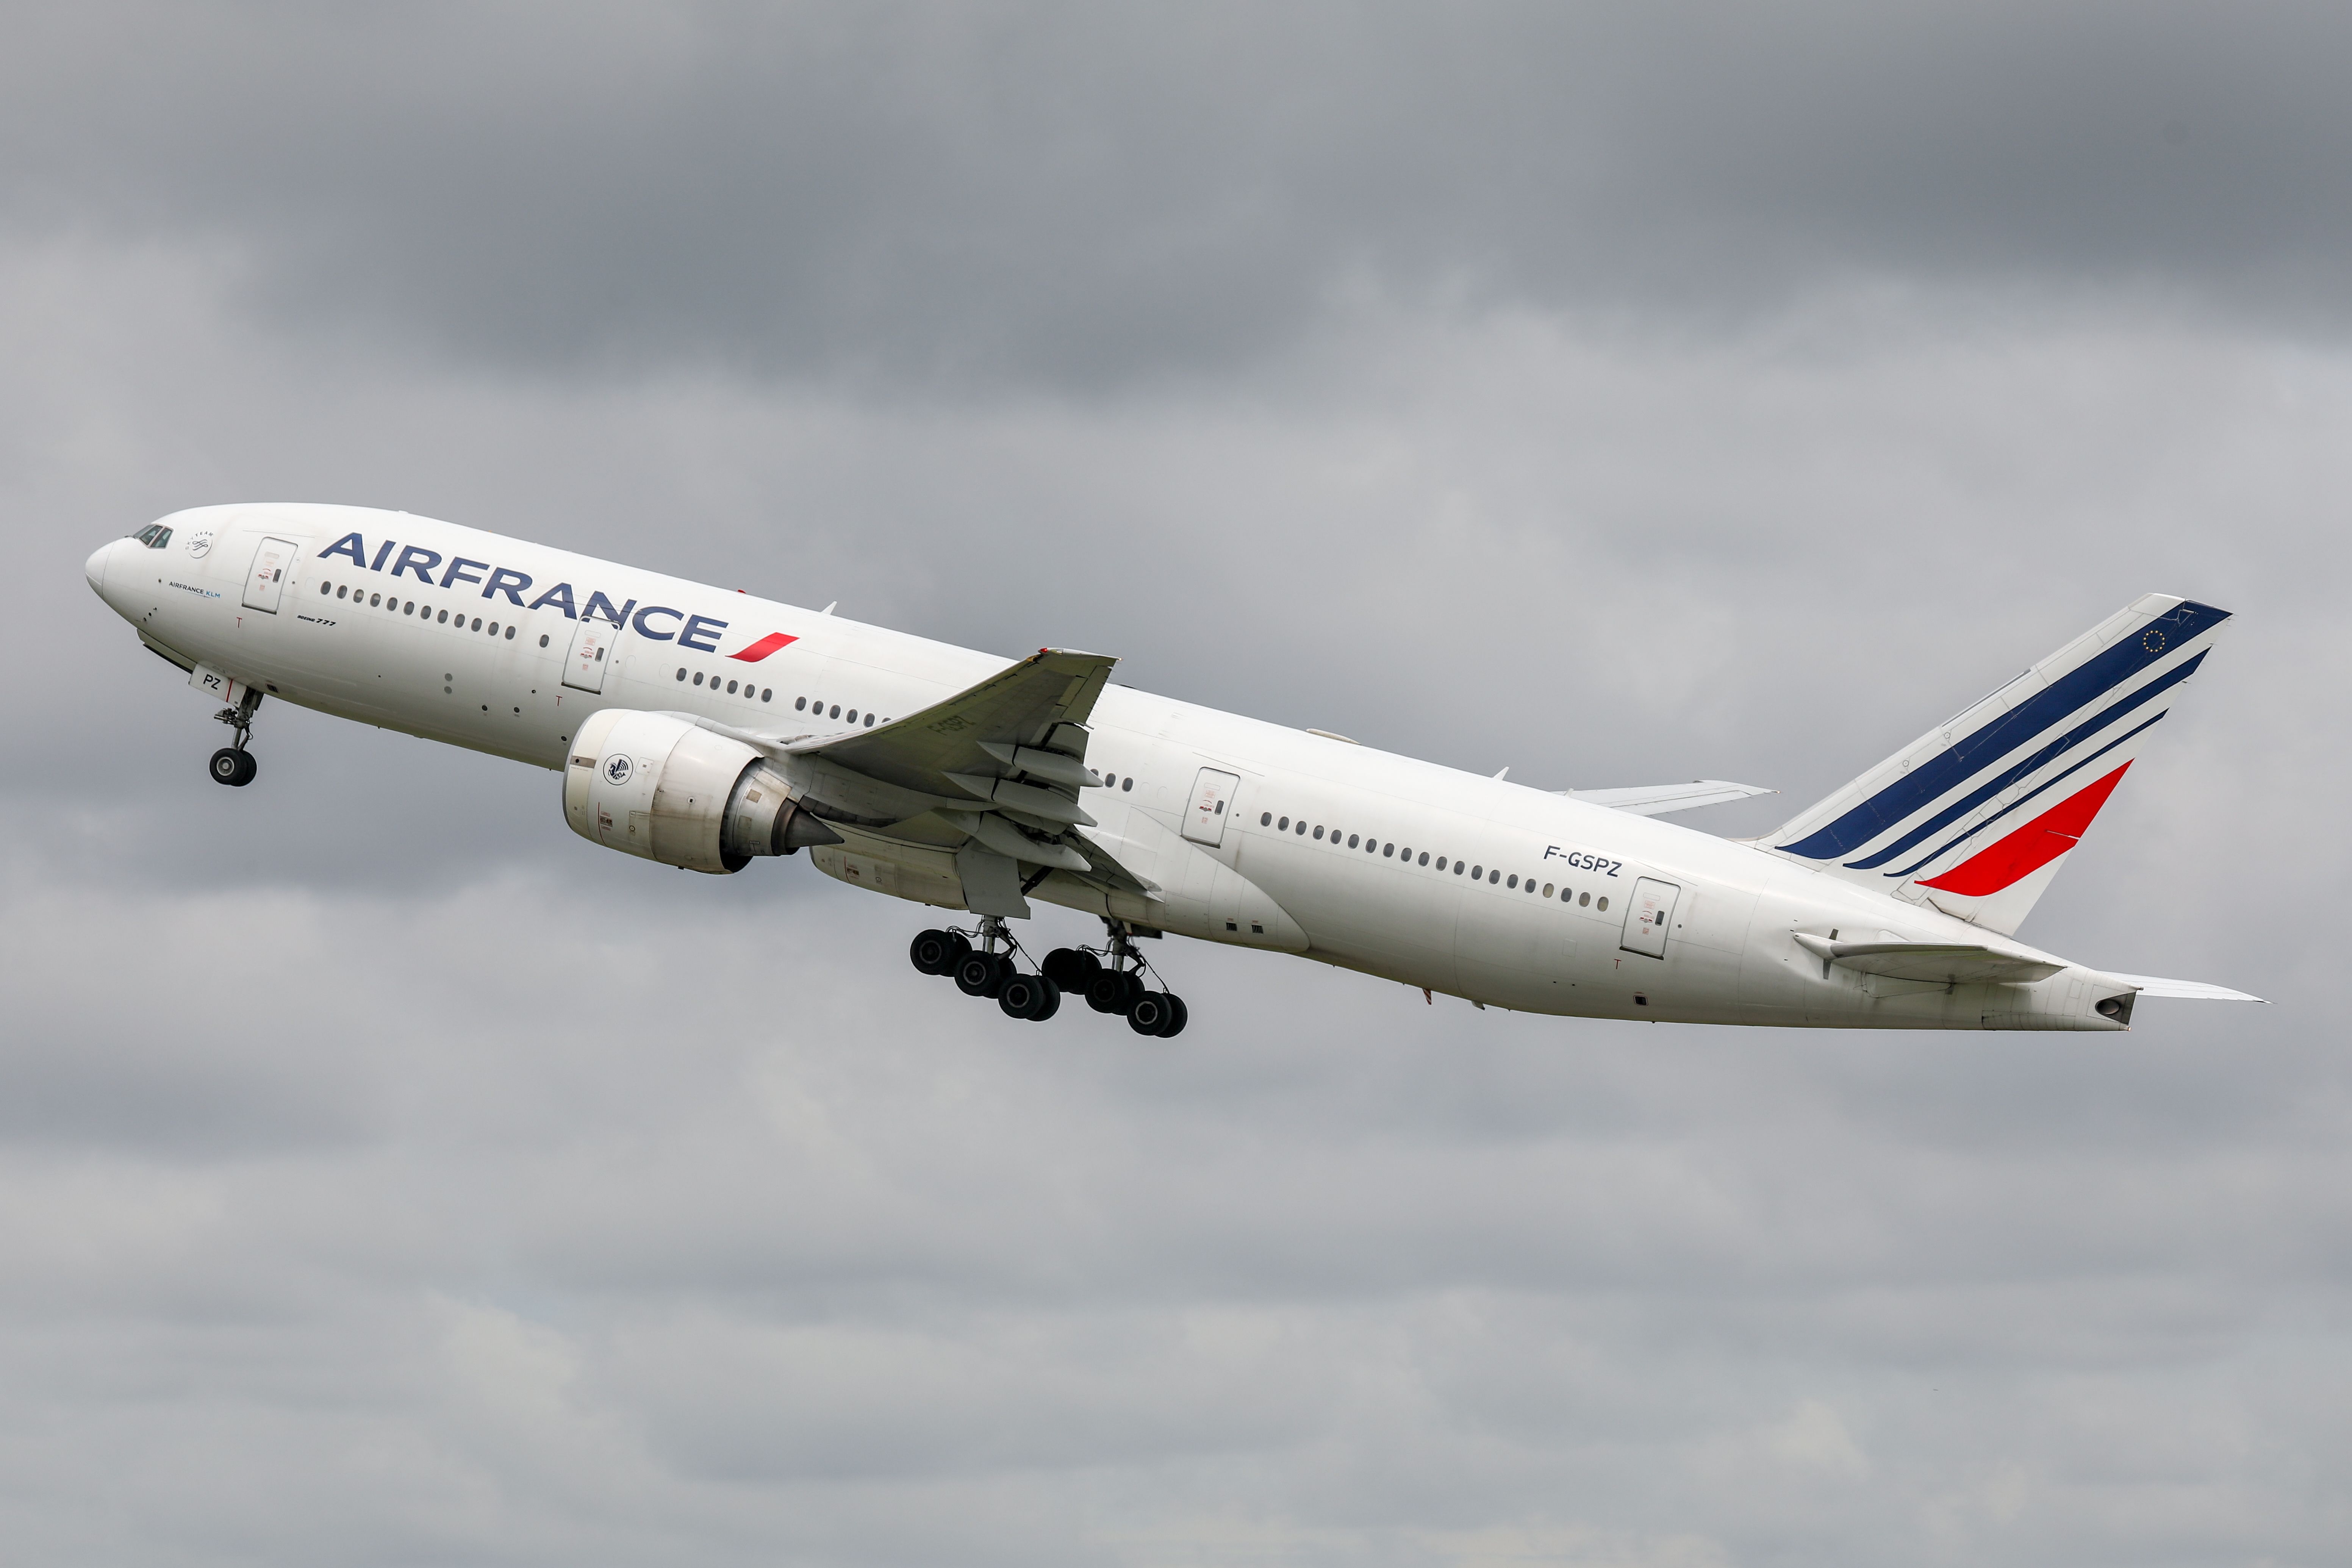 Air France Boeing 777-200ER departing BKK shutterstock_1336860311